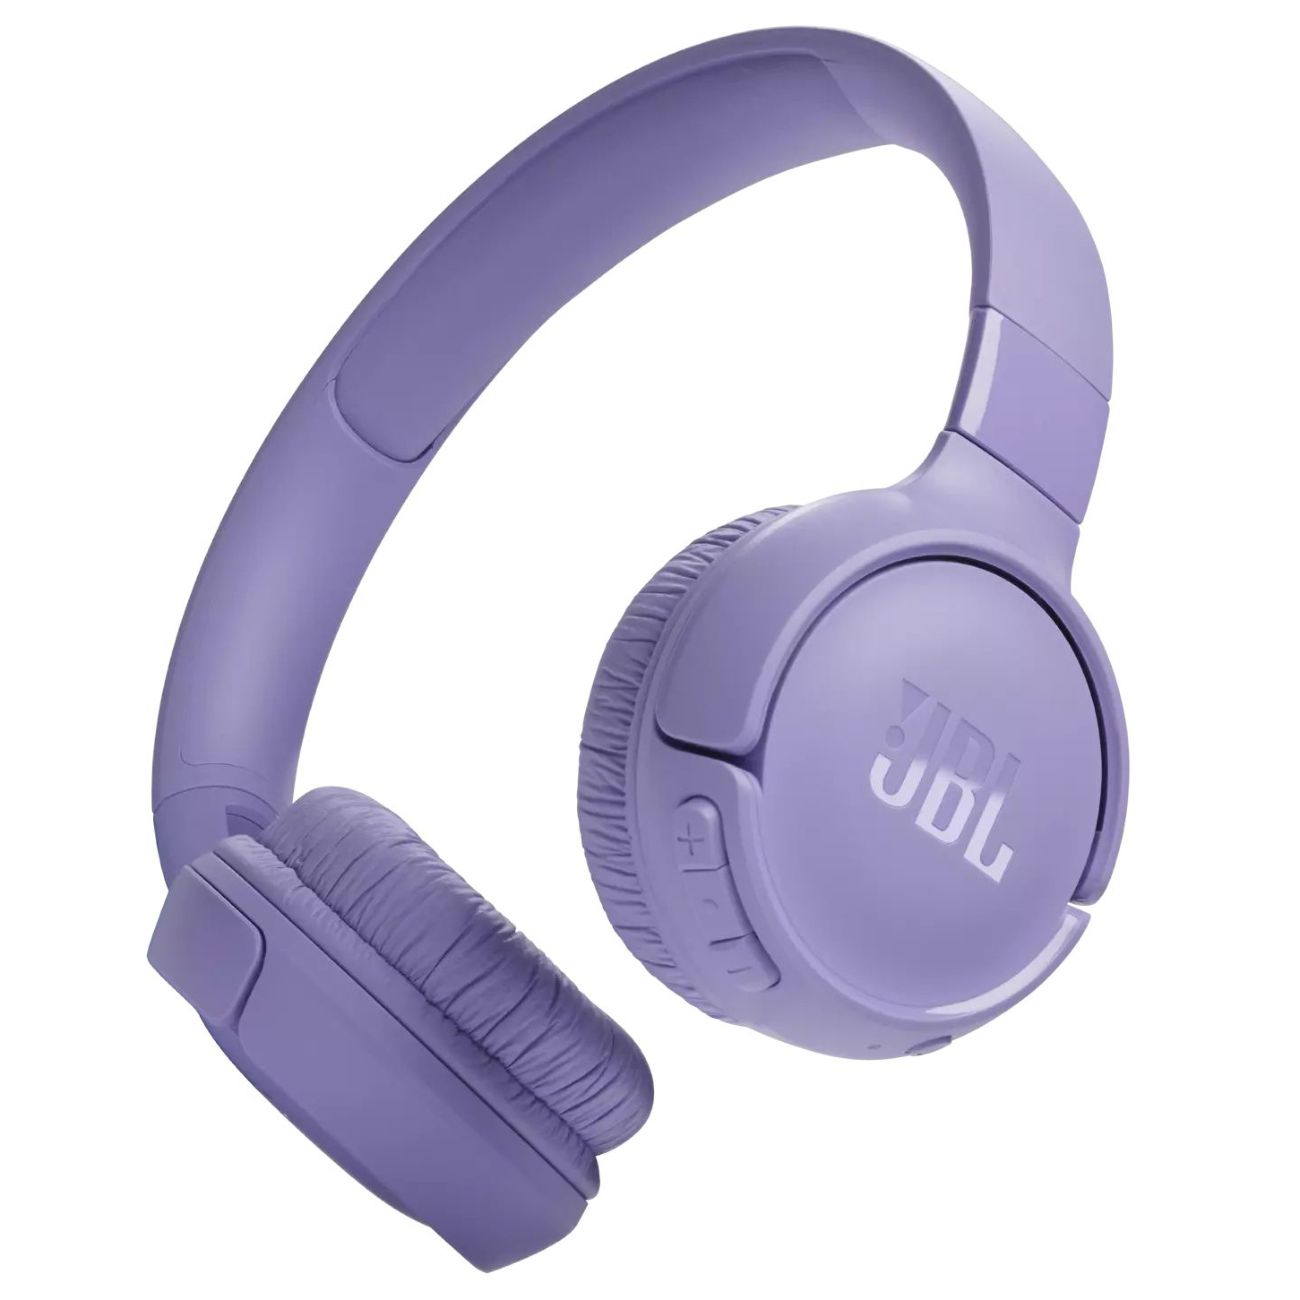 Беспроводные наушники JBL Tune 520BT, фиолетовый